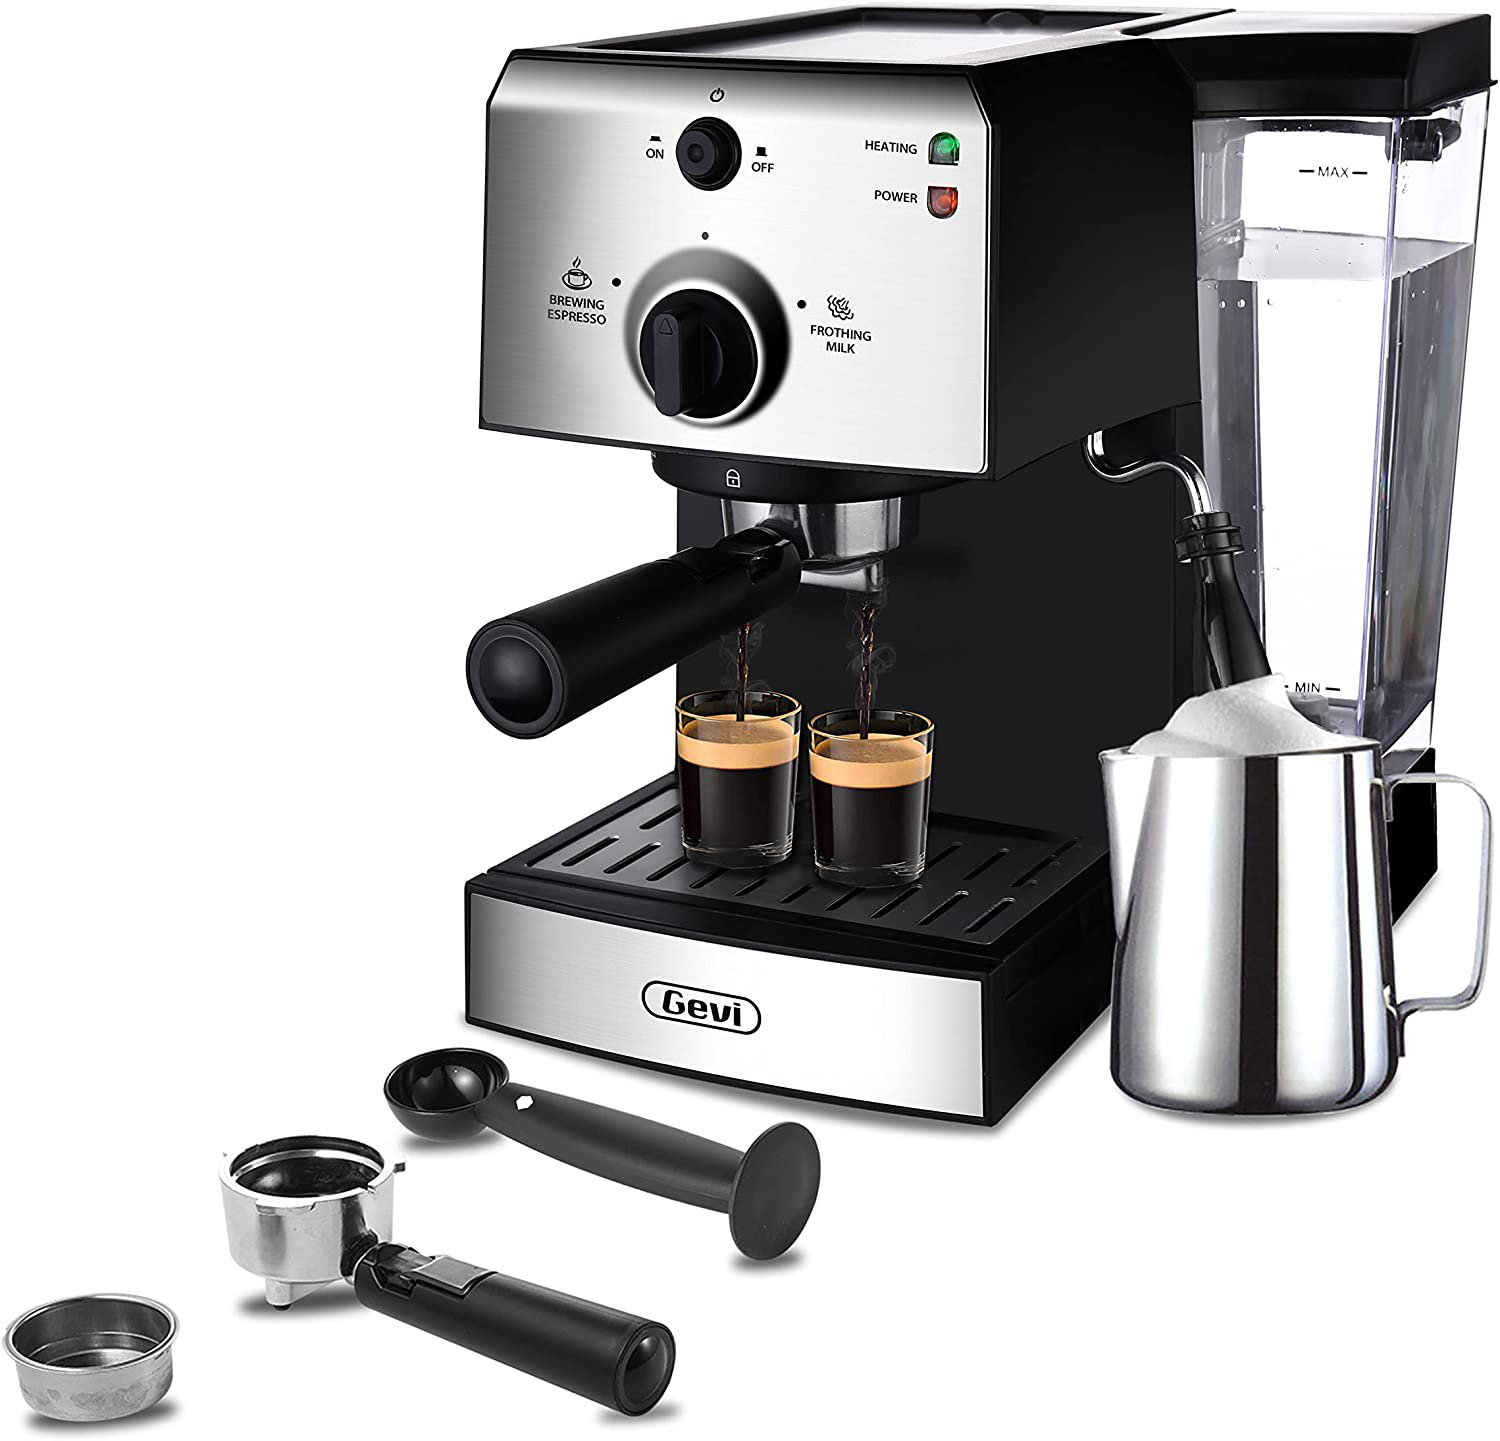 Coffee Espresso MakerCappuccino MakerLatte Maker NEW FAST SHIP 2-Day Mr 